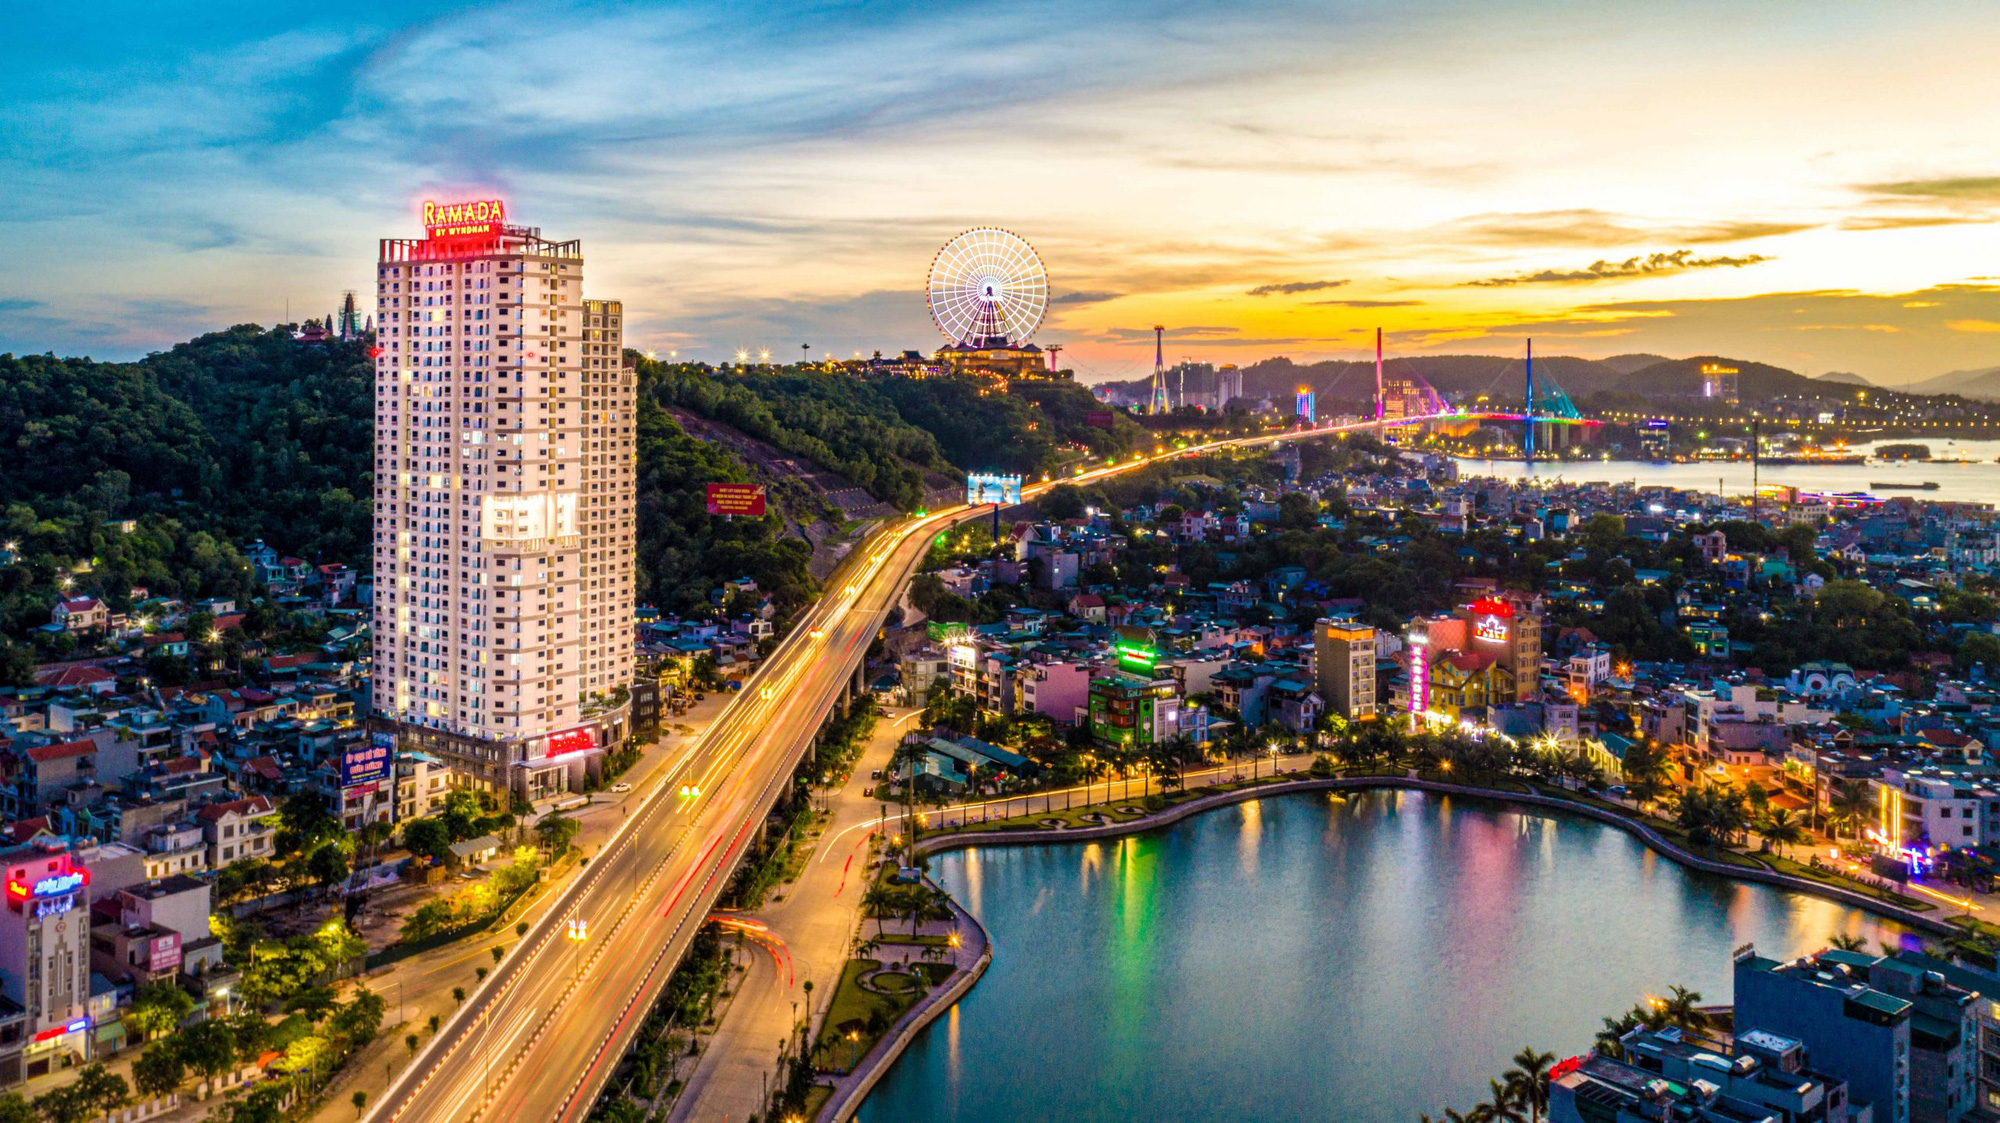 Đầu tư bất động sản nghỉ dưỡng tại Ramada Ha Long Bay View nhận ngay lợi nhuận - Ảnh 2.